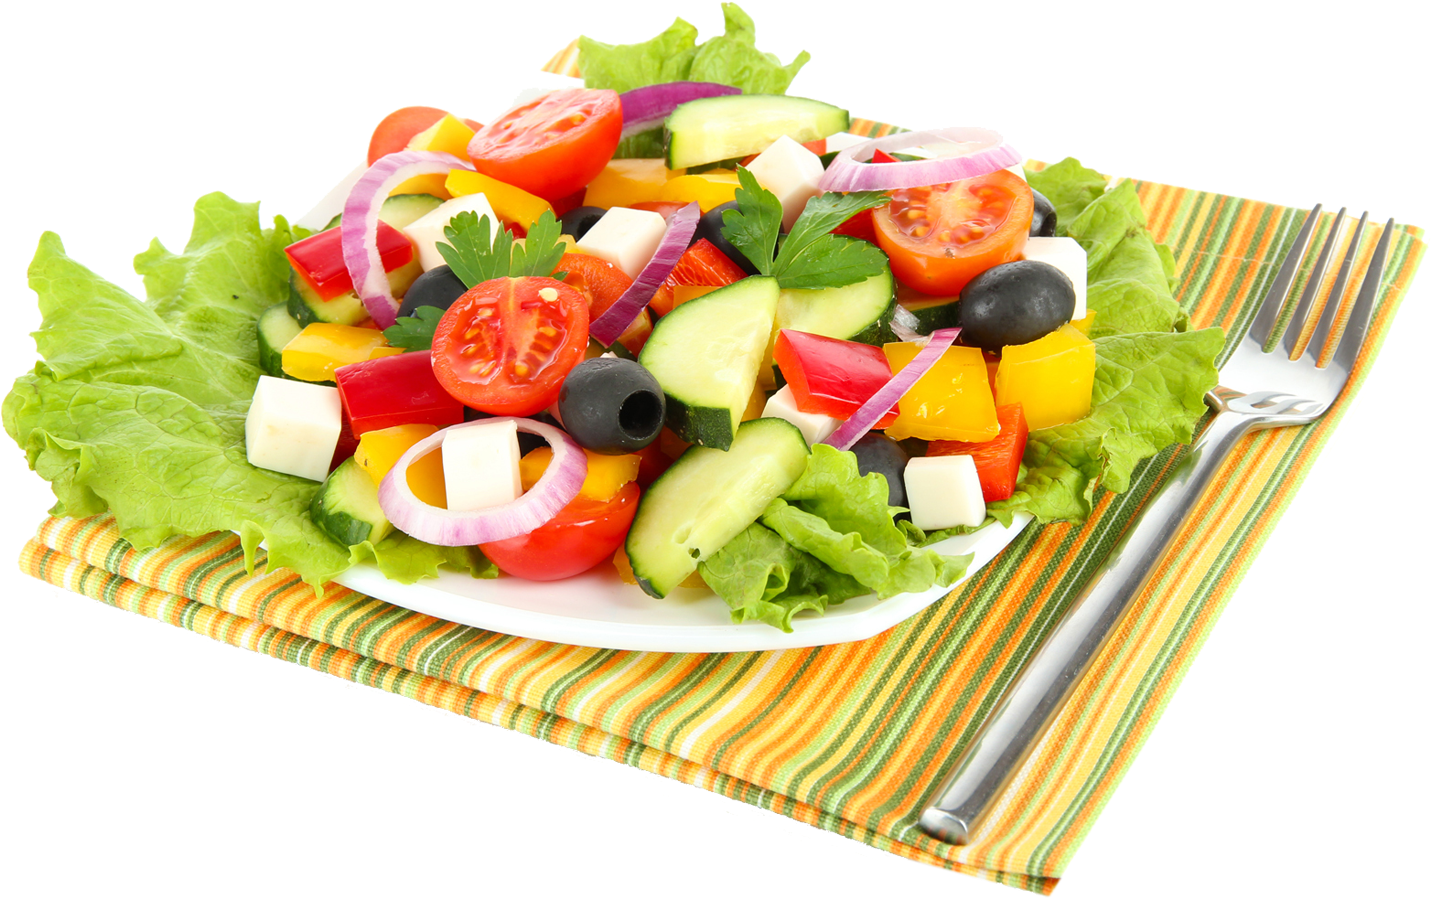 Картинка еда для детей на прозрачном фоне. Тарелка с салатом. Овощной салат на белом фоне. Овощной салат на прозрачном фоне. Овощной салат без фона.